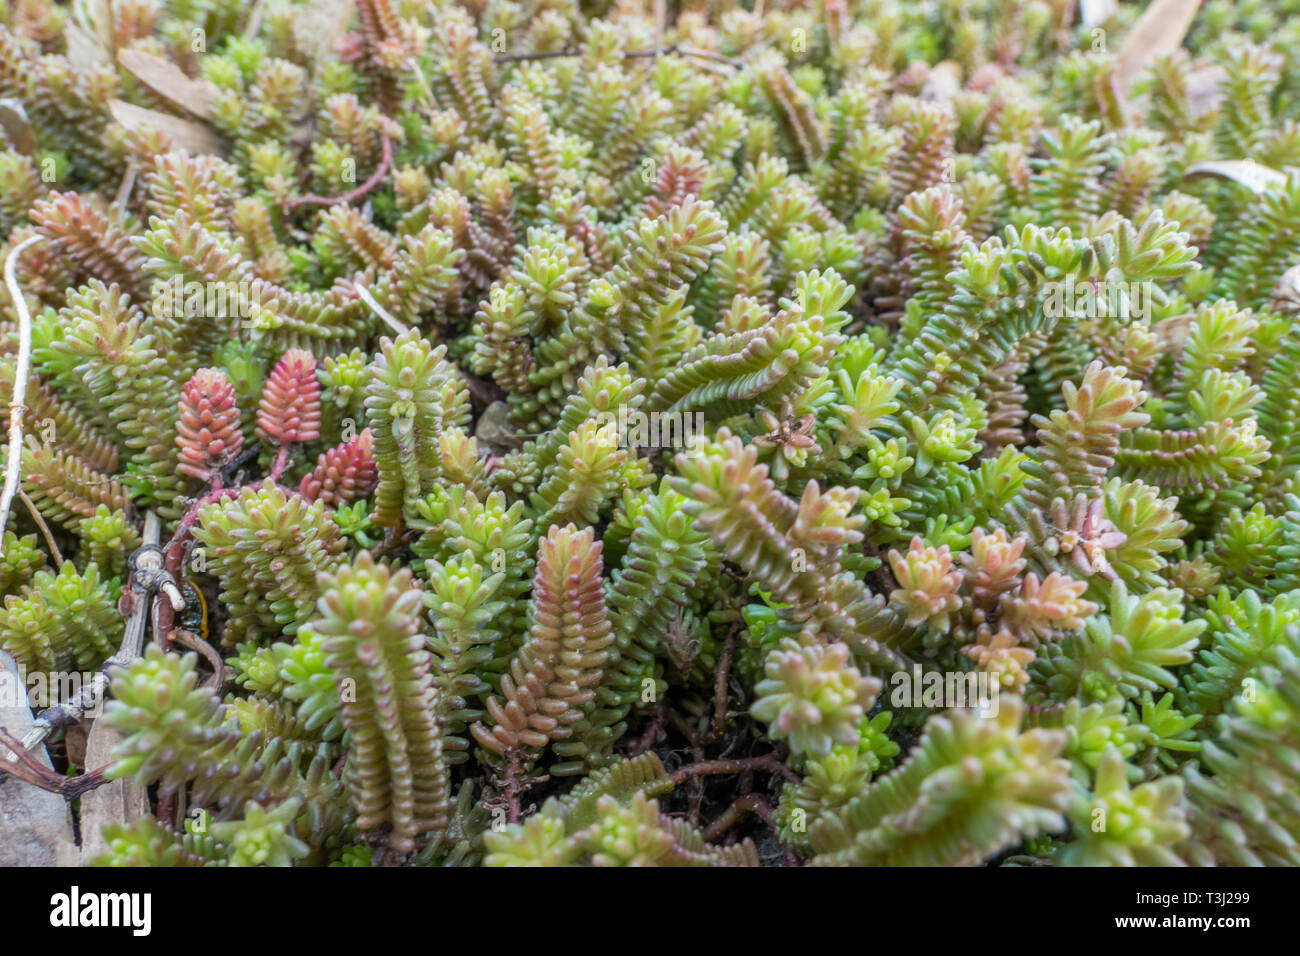 Tasteless Stonecrop, Sedum sexangulare succulent perennial Close-up Stock Photo